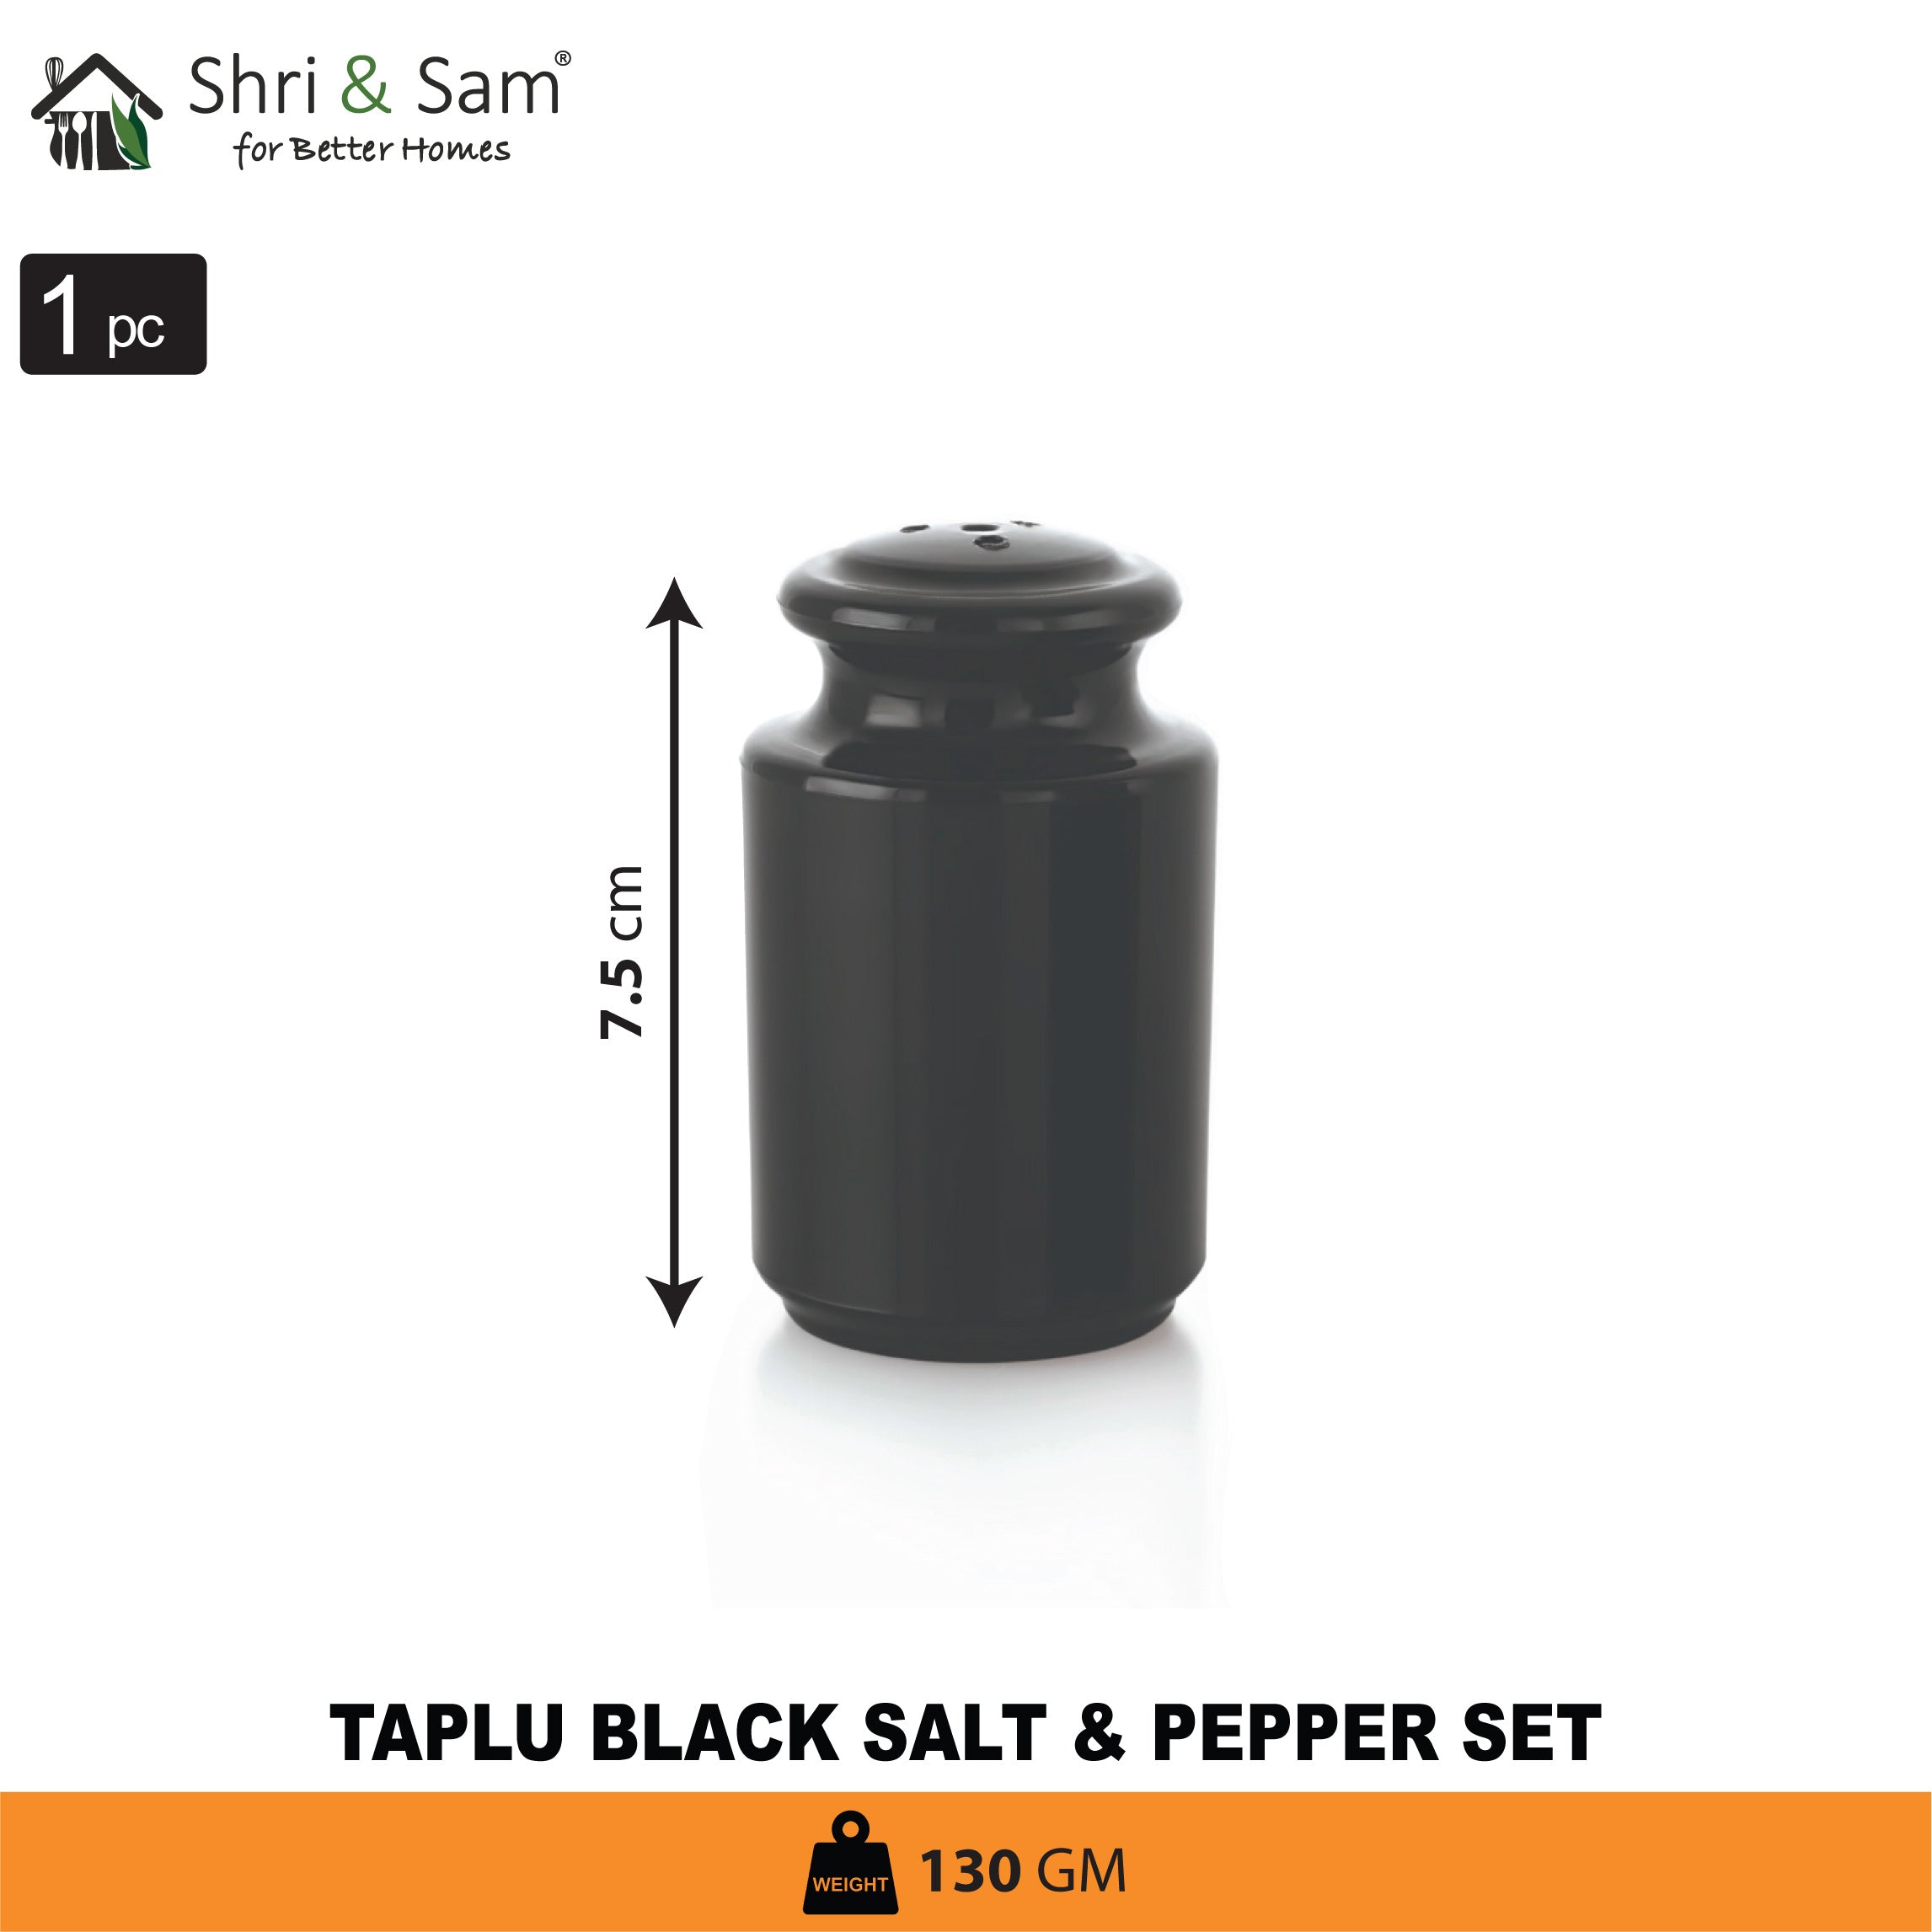 Stainless Steel Taplu Salt & Pepper